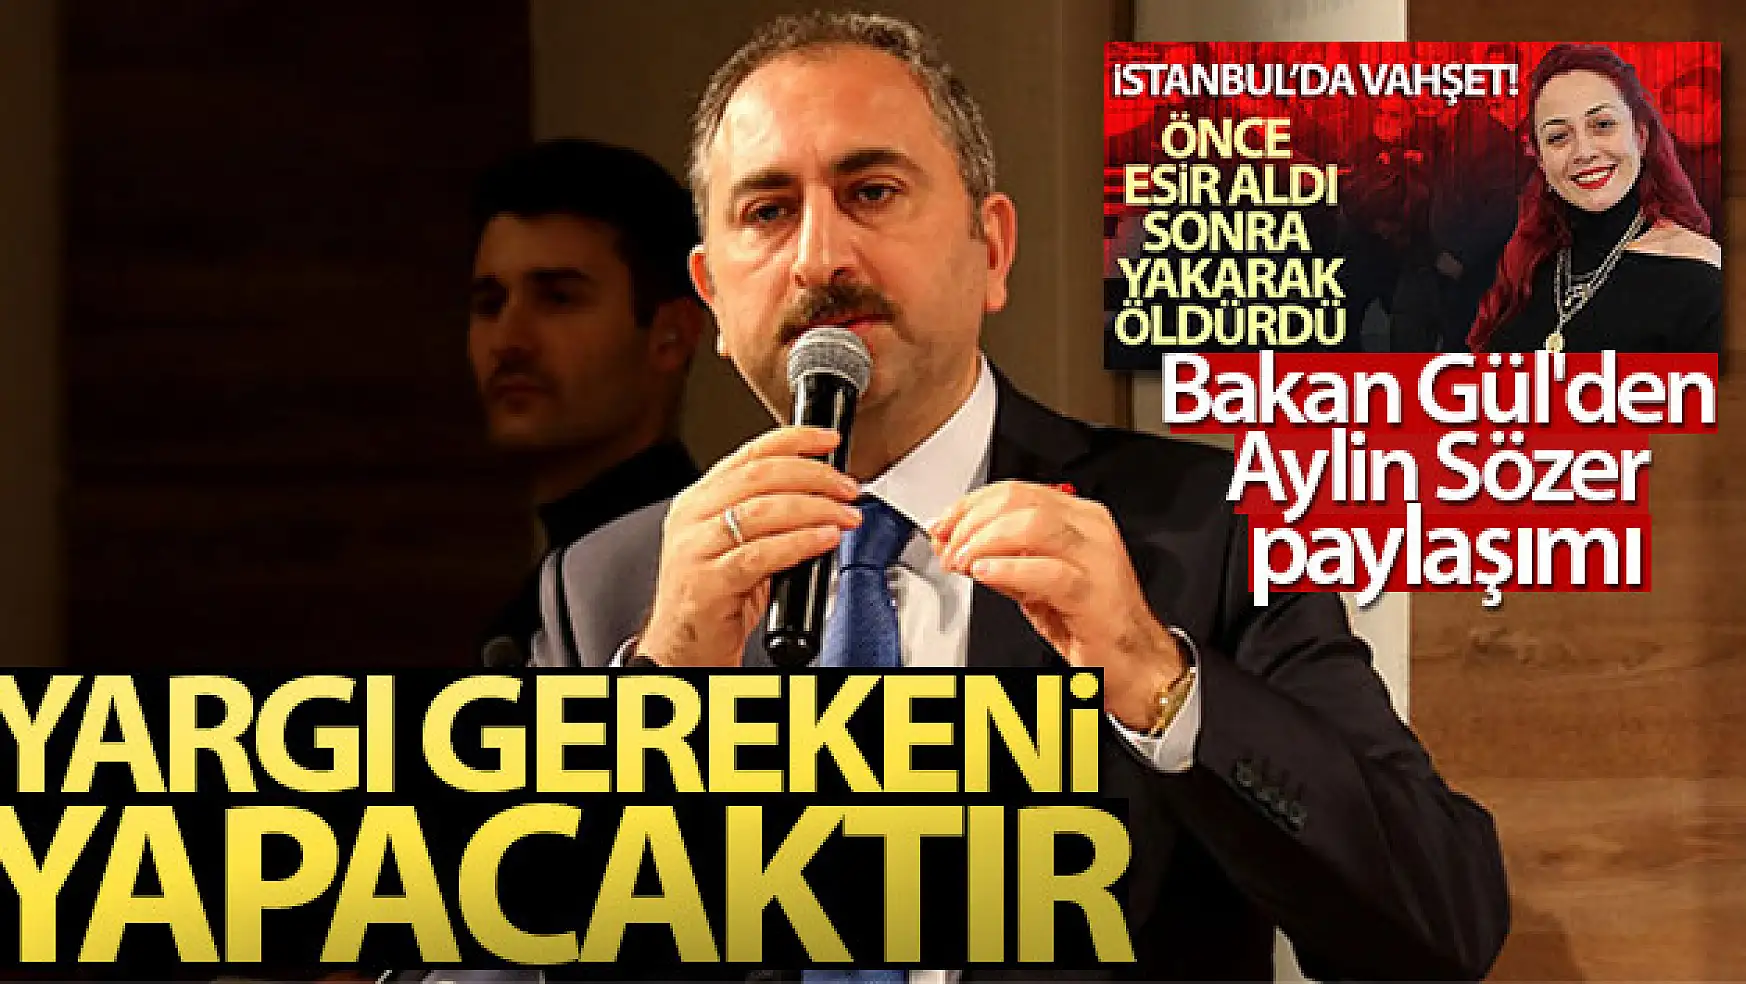 Adalet Bakanı Abdulhamit Gül, ''Yargı gerekeni yapacaktır''